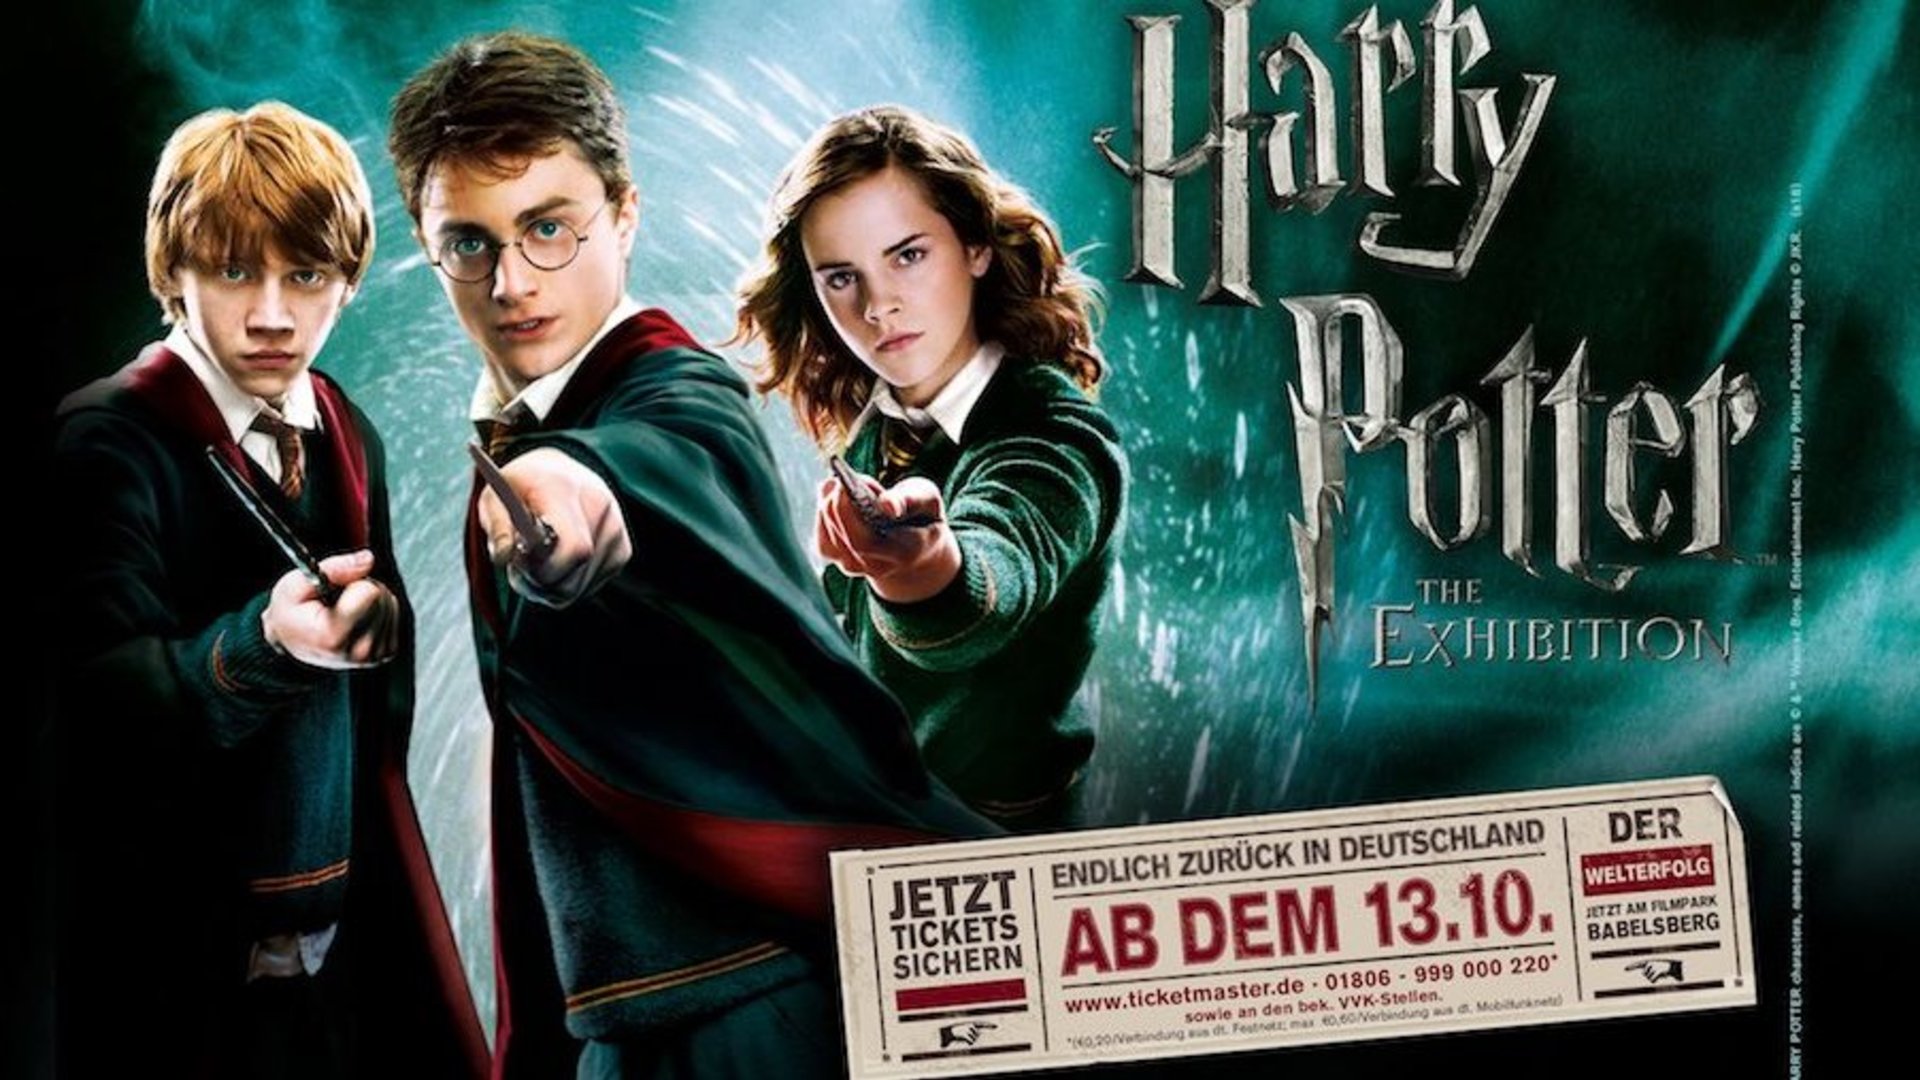 Kino Harry Potter